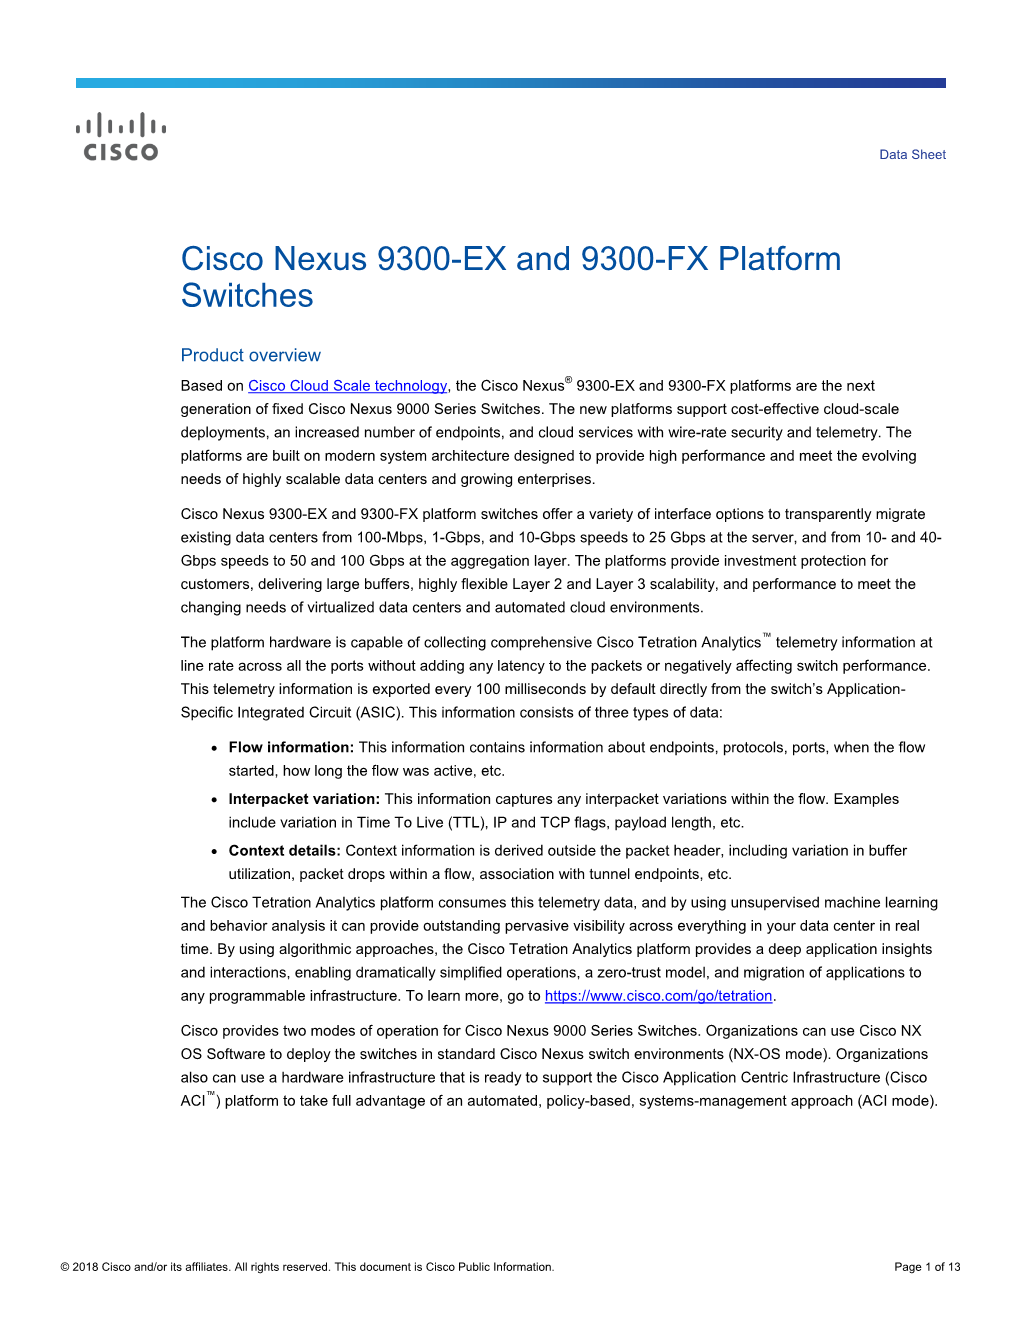 Cisco Nexus 9300-EX and 9300-FX Platform Switches Data Sheet